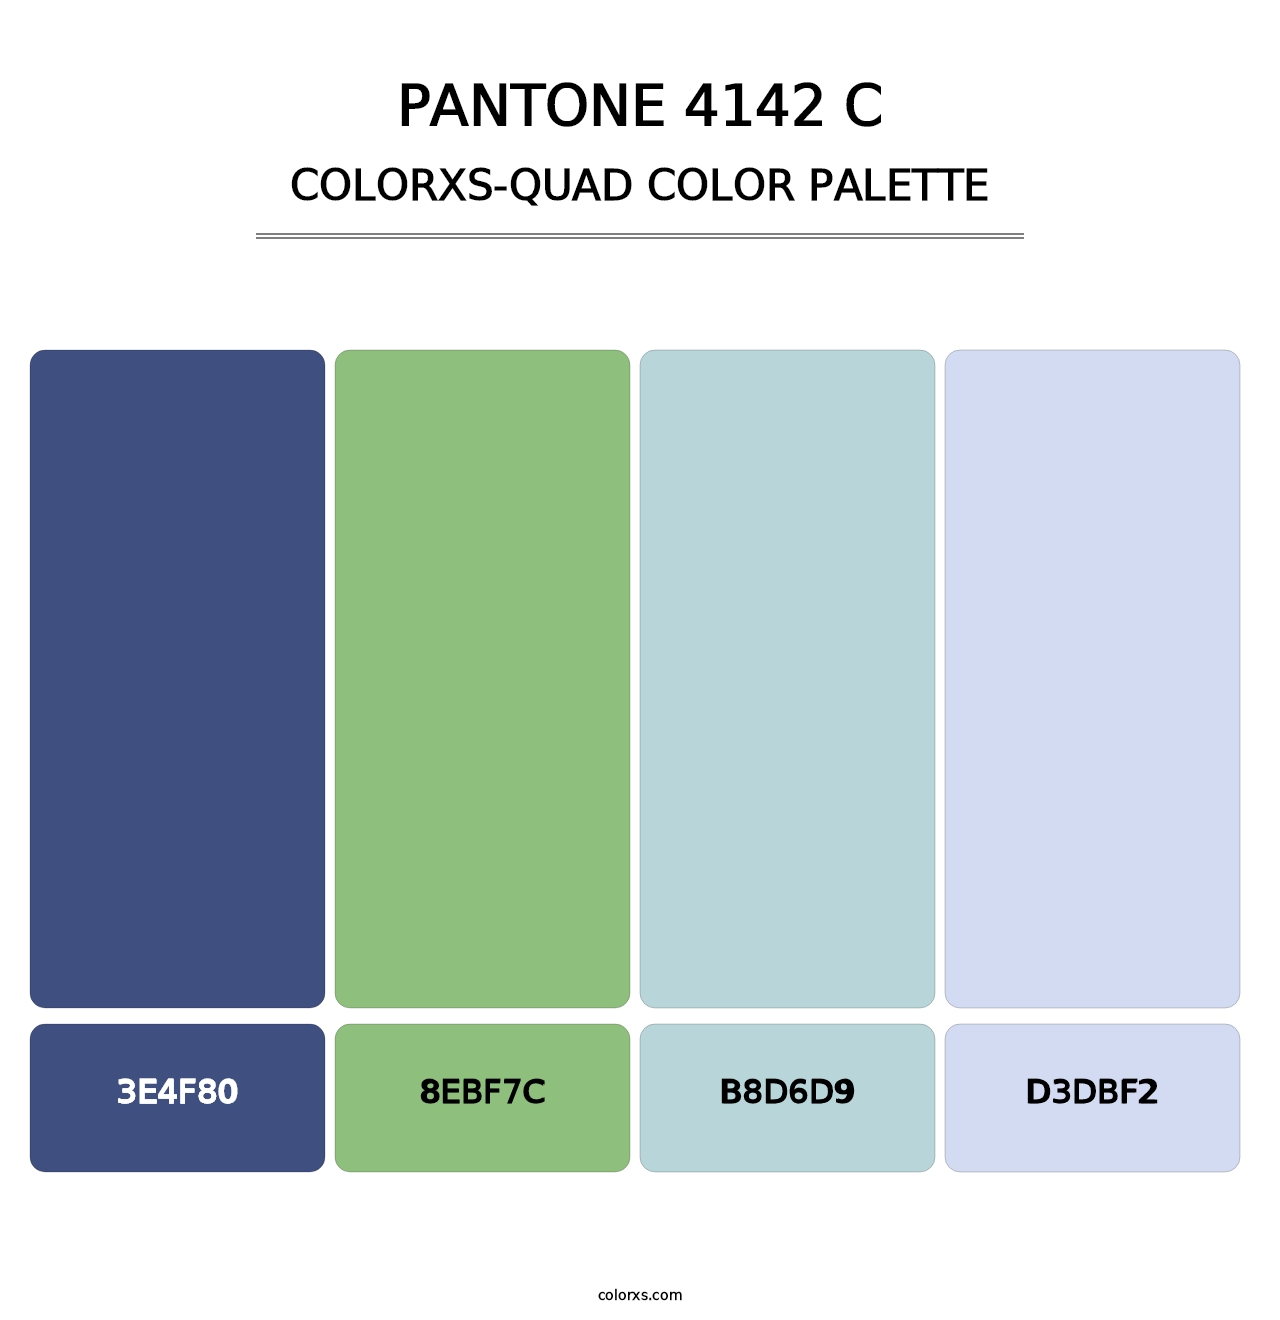 PANTONE 4142 C - Colorxs Quad Palette